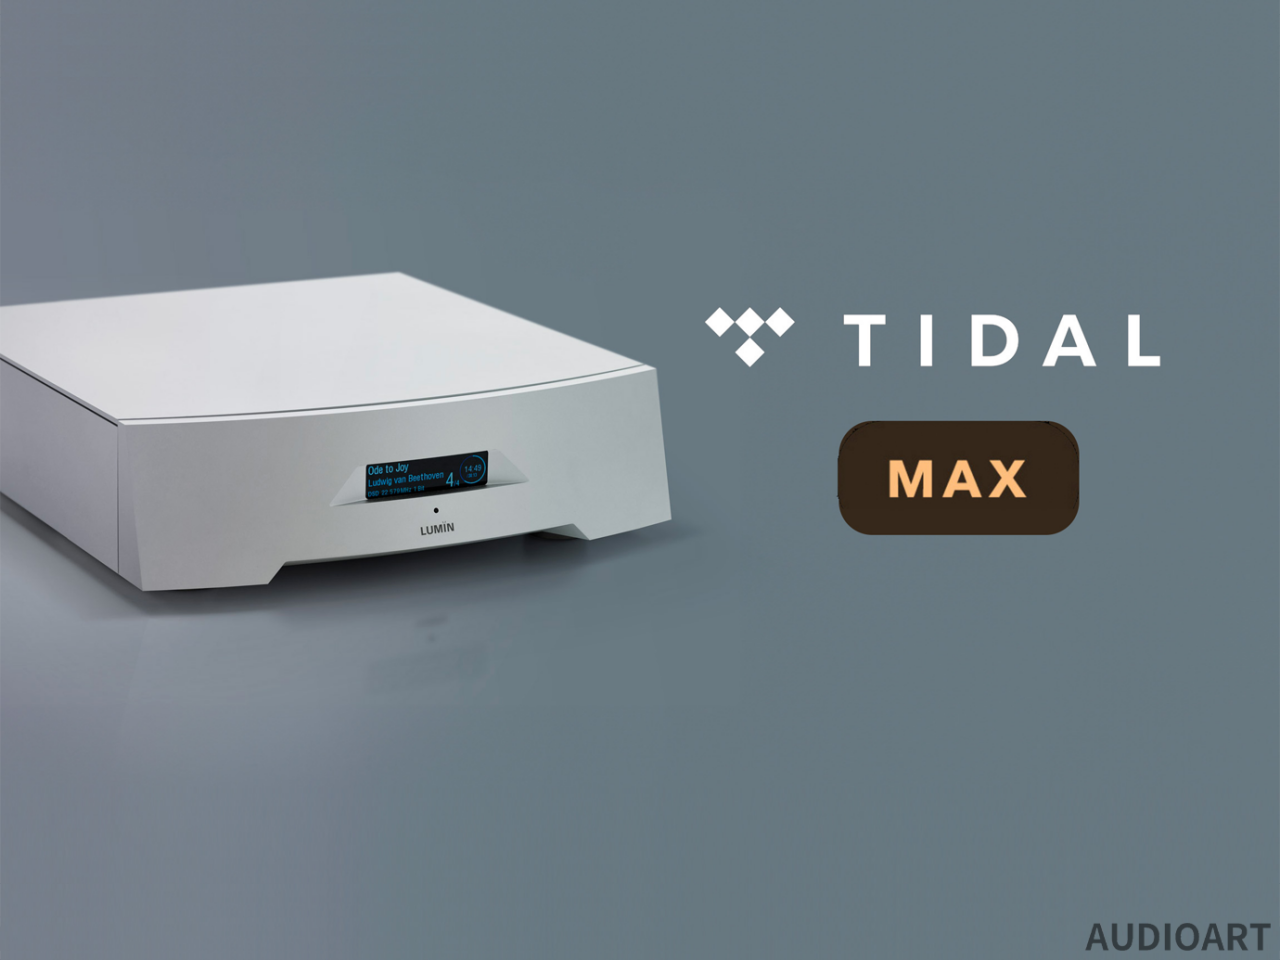 루민, 업계 최초 TIDAL MAX 고음질 재생 업데이트